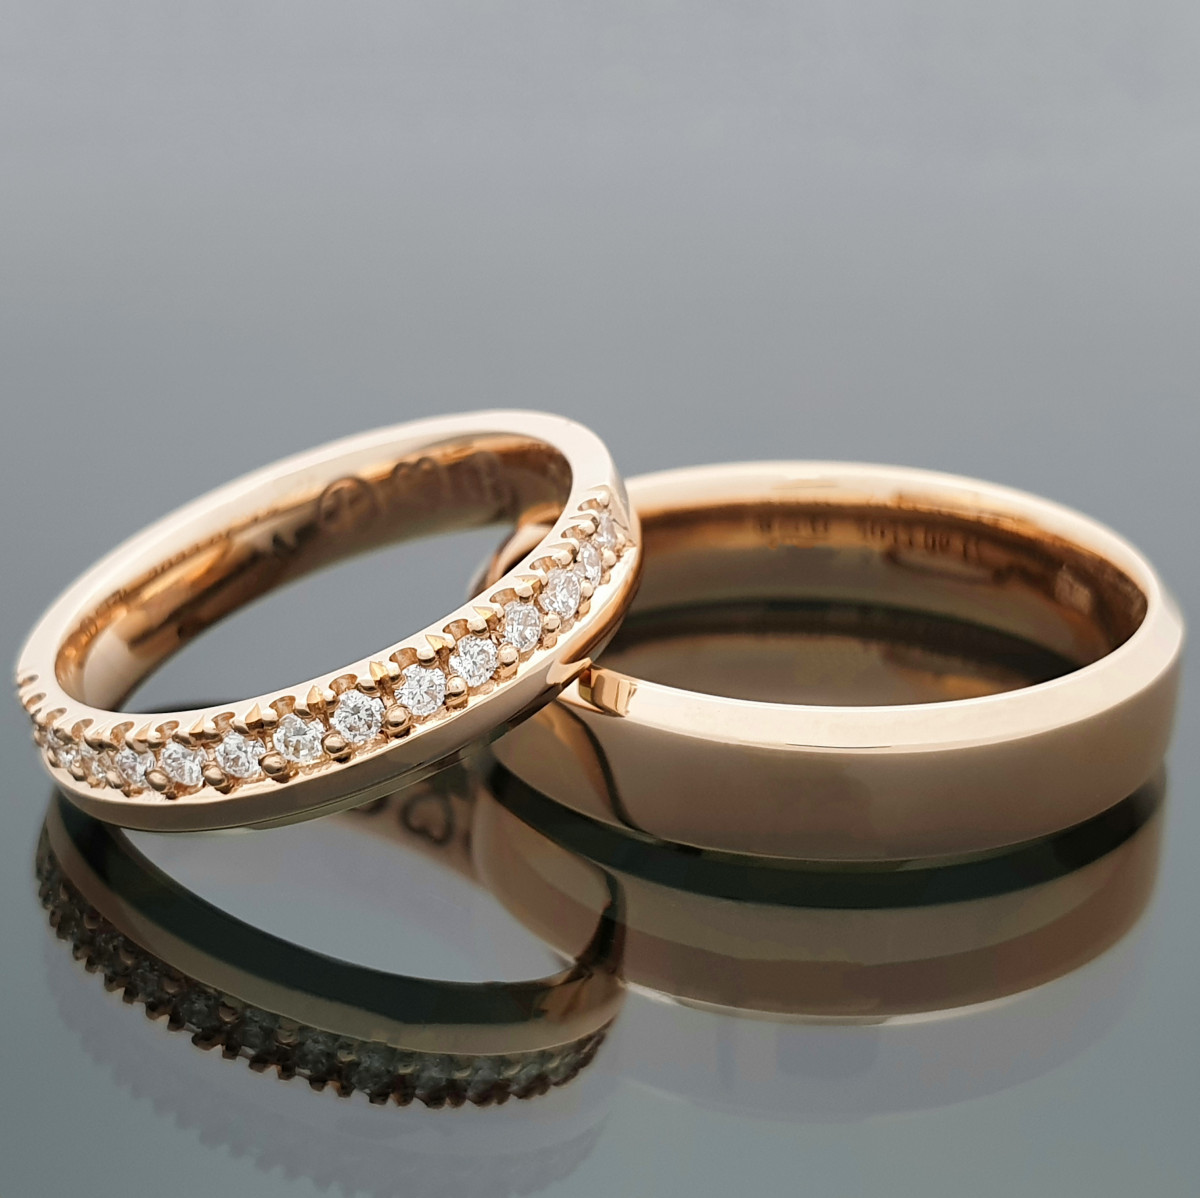 Vestuviniai žiedai su briliantų juostele (vz123)